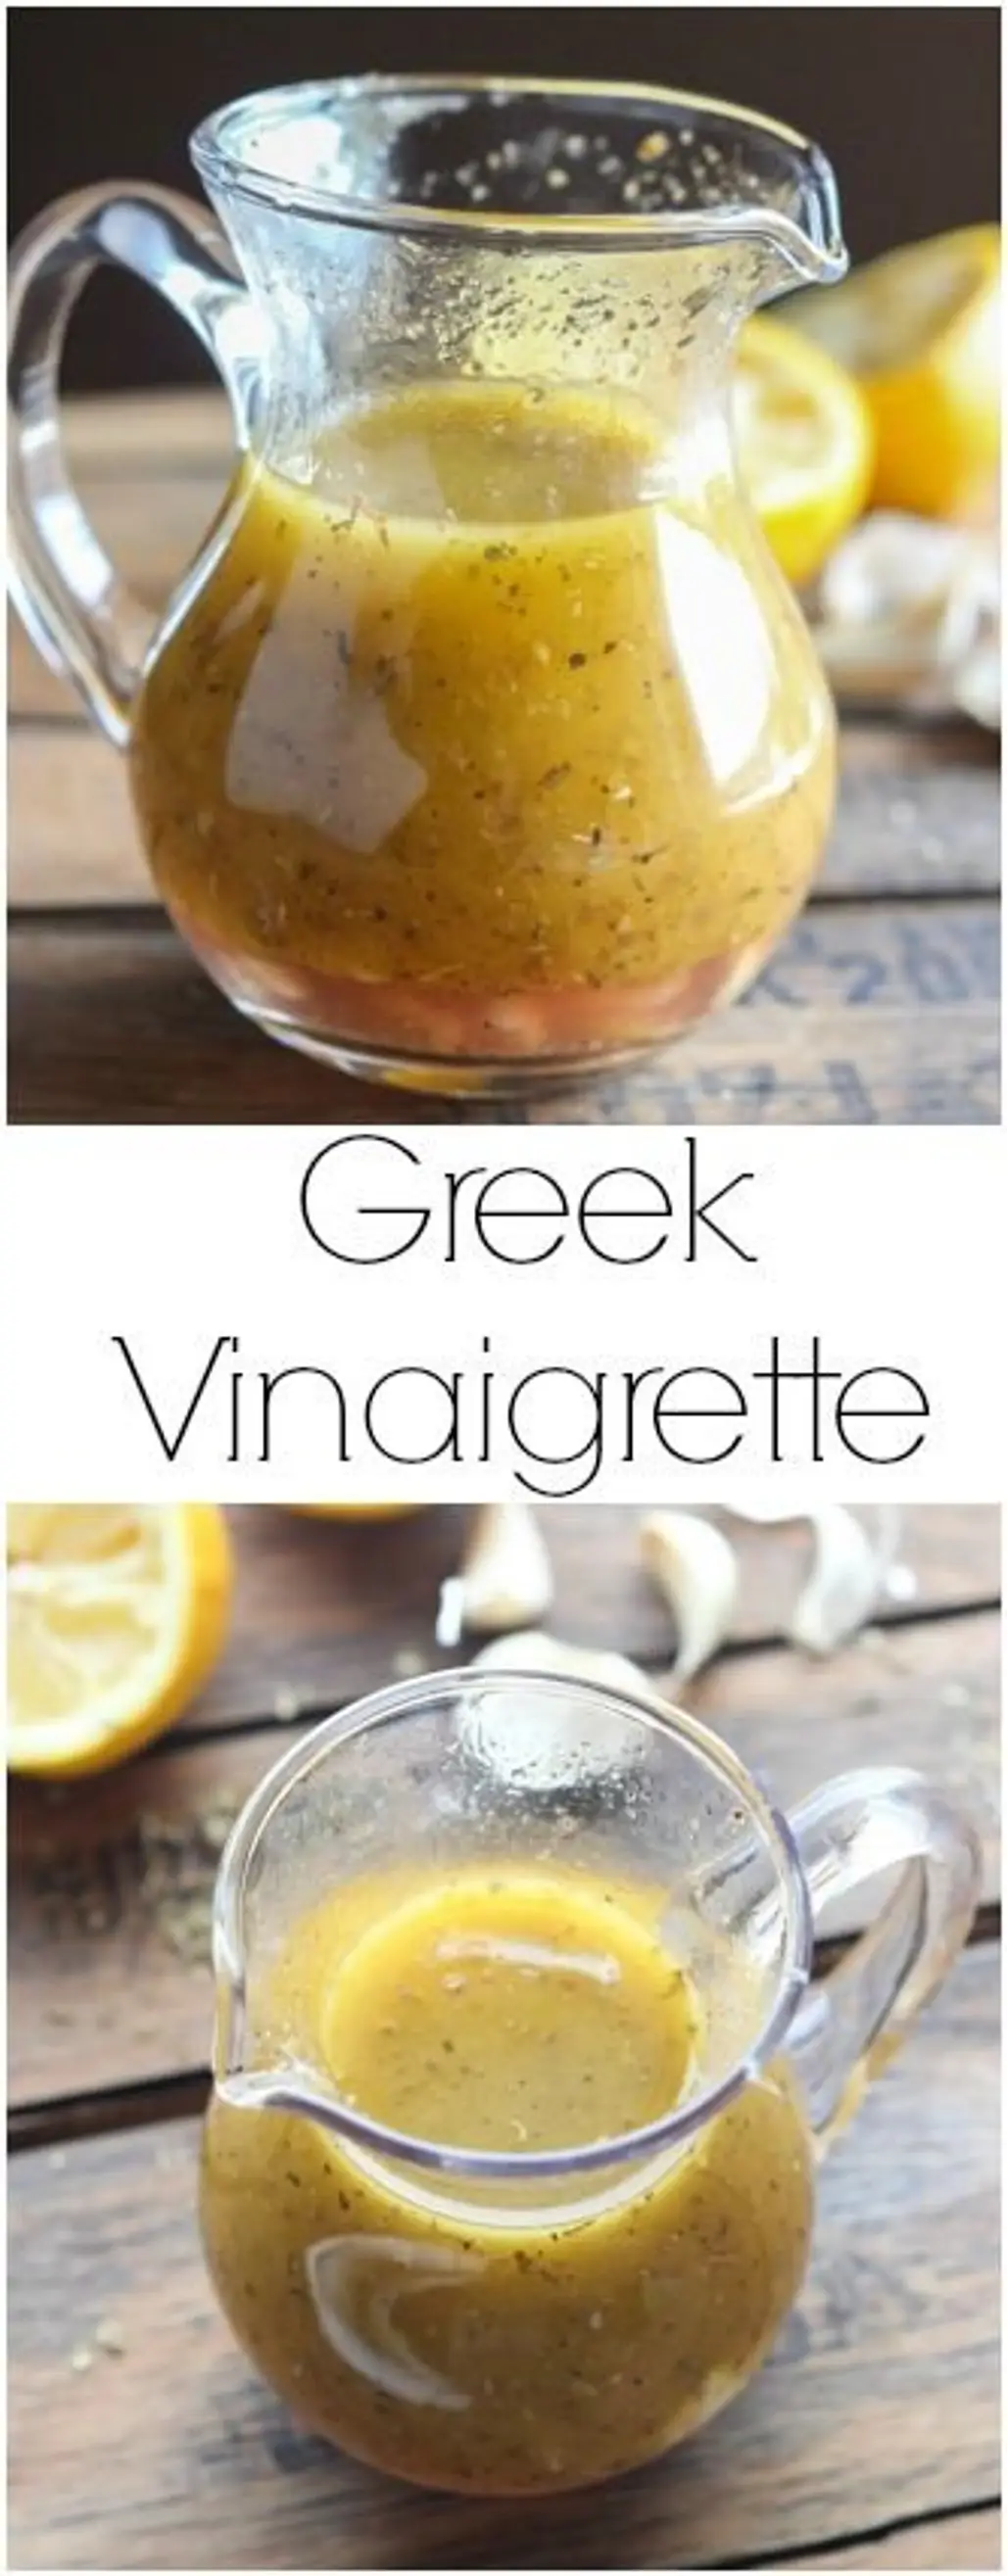 Greek Vinaigrette Dressing